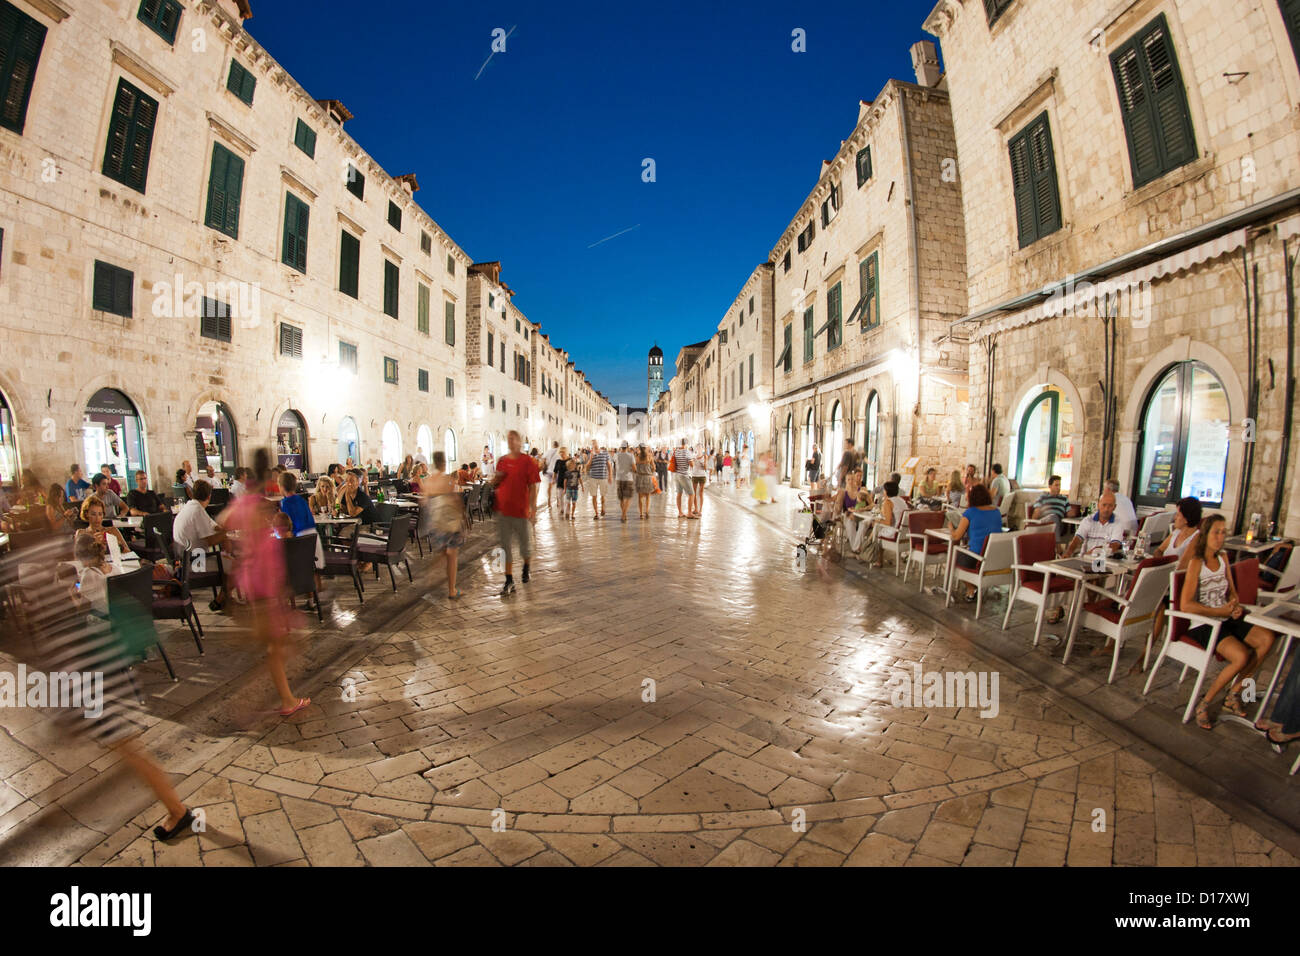 Les piétons marcher la nuit le long de la rue principale Stradun, dans la vieille ville de Dubrovnik, sur la côte Adriatique de Croatie. Banque D'Images